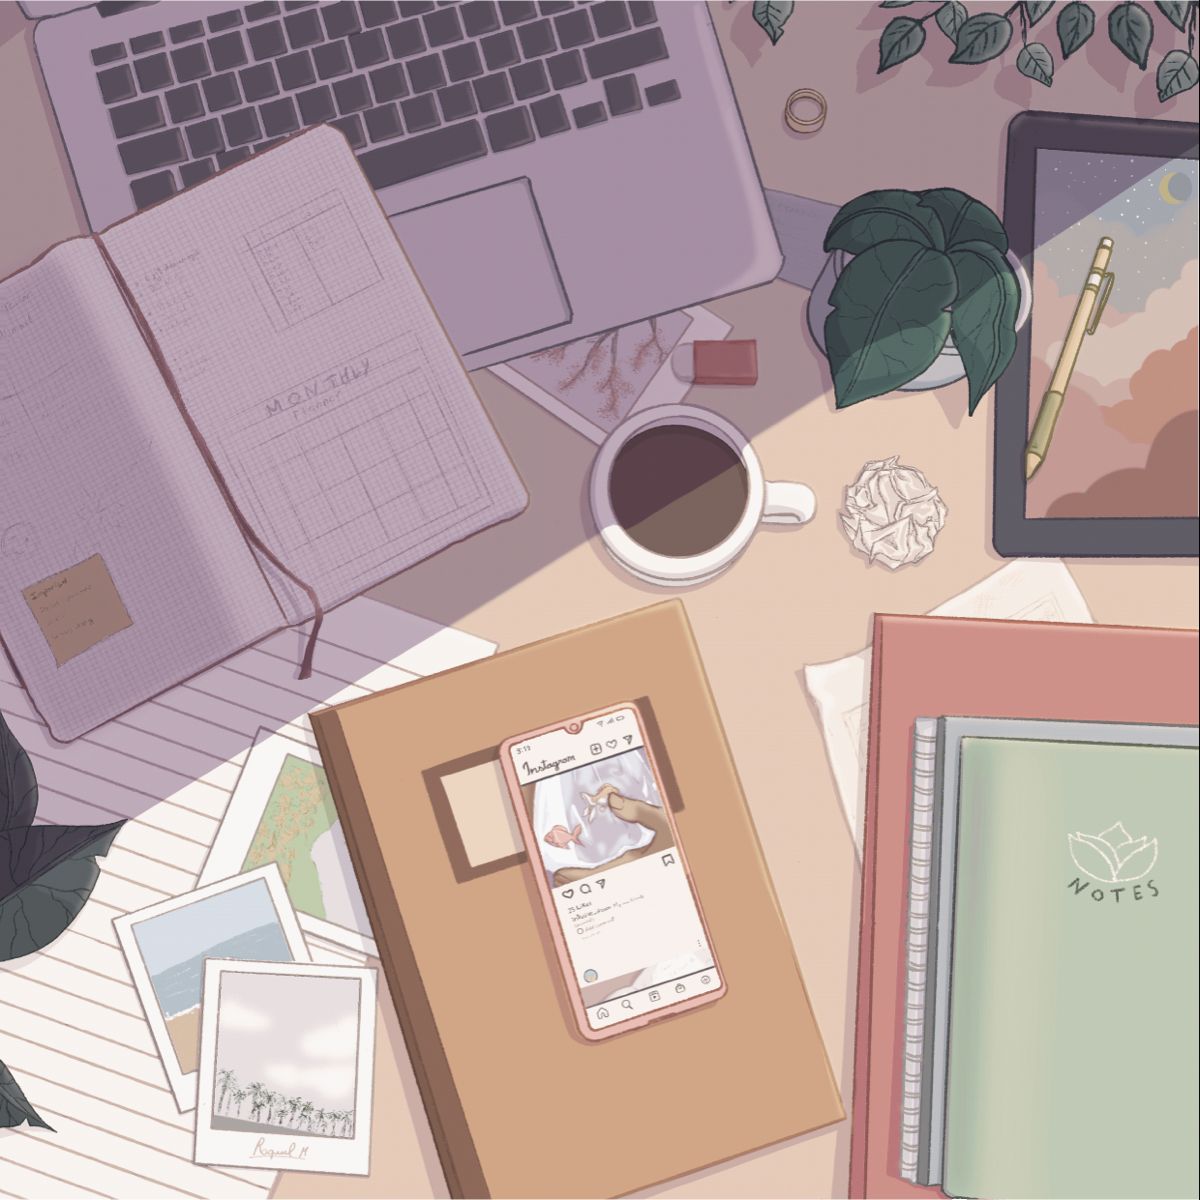 Best clutter aesthetic??? ideas. kawaii wallpaper, aesthetic anime, anime wallpaper